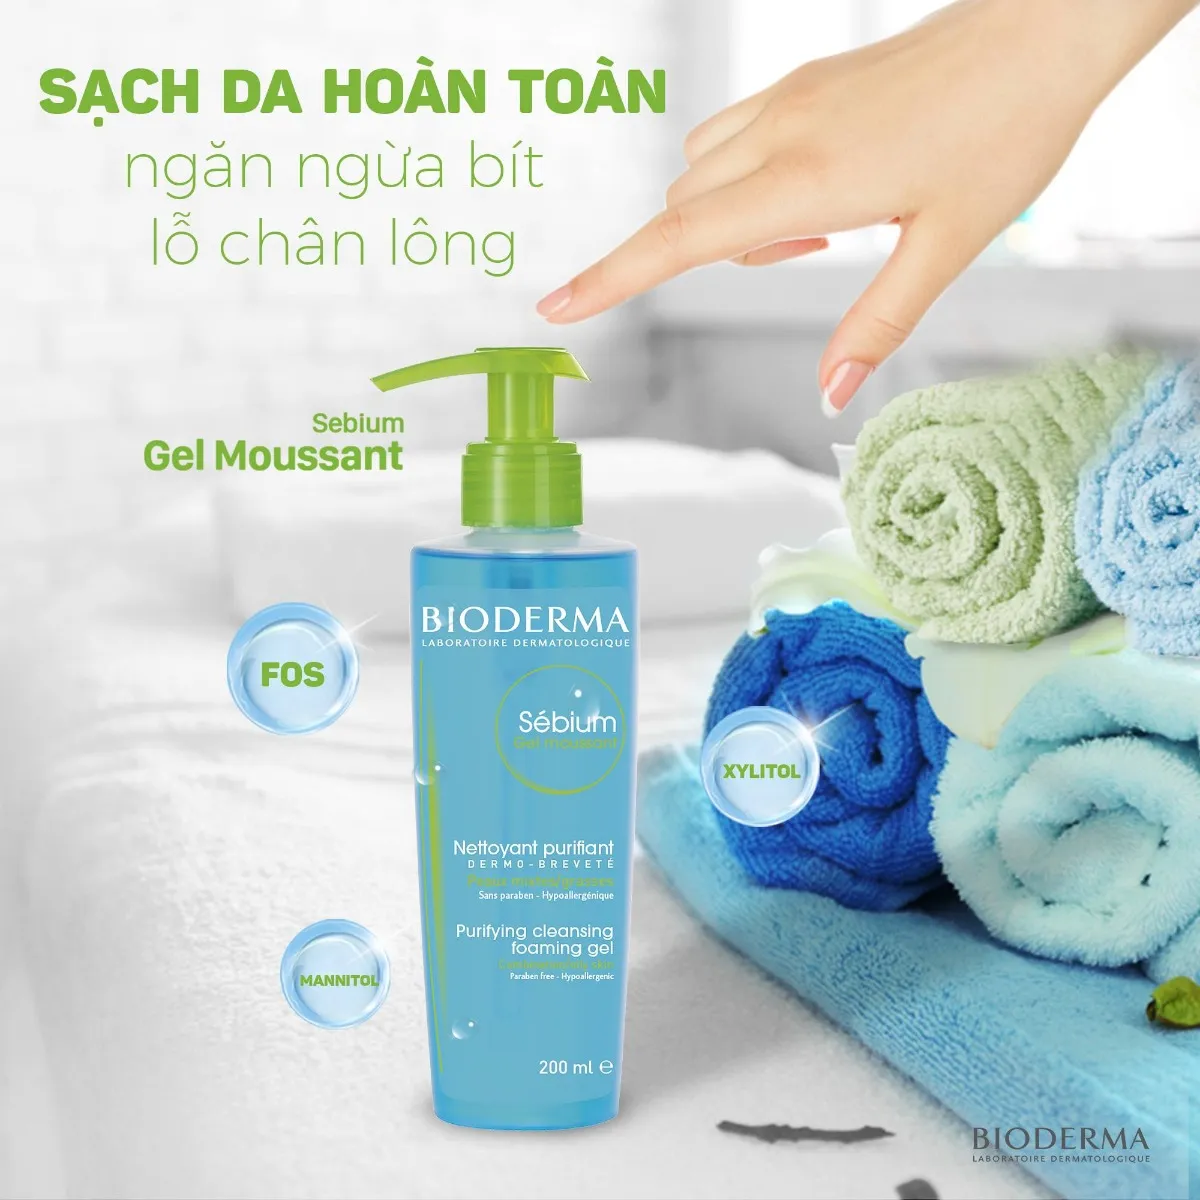 Gel Rửa Mặt Bioderma Sébium Gel Moussant giảm bít tắc lỗ chân lông, điều tiết bã nhờn và ngăn ngừa mụn hiệu quả.